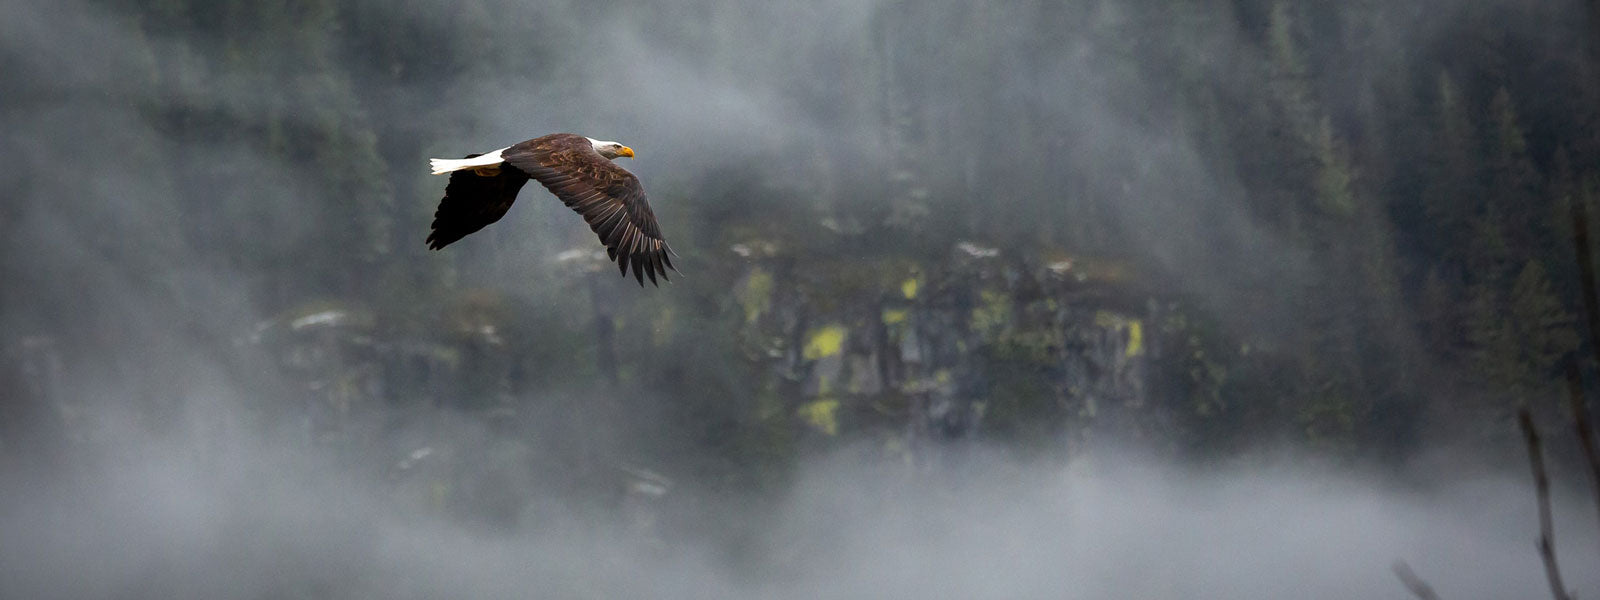 Mora bushcraft survival knife, bald eagle flying in the mist